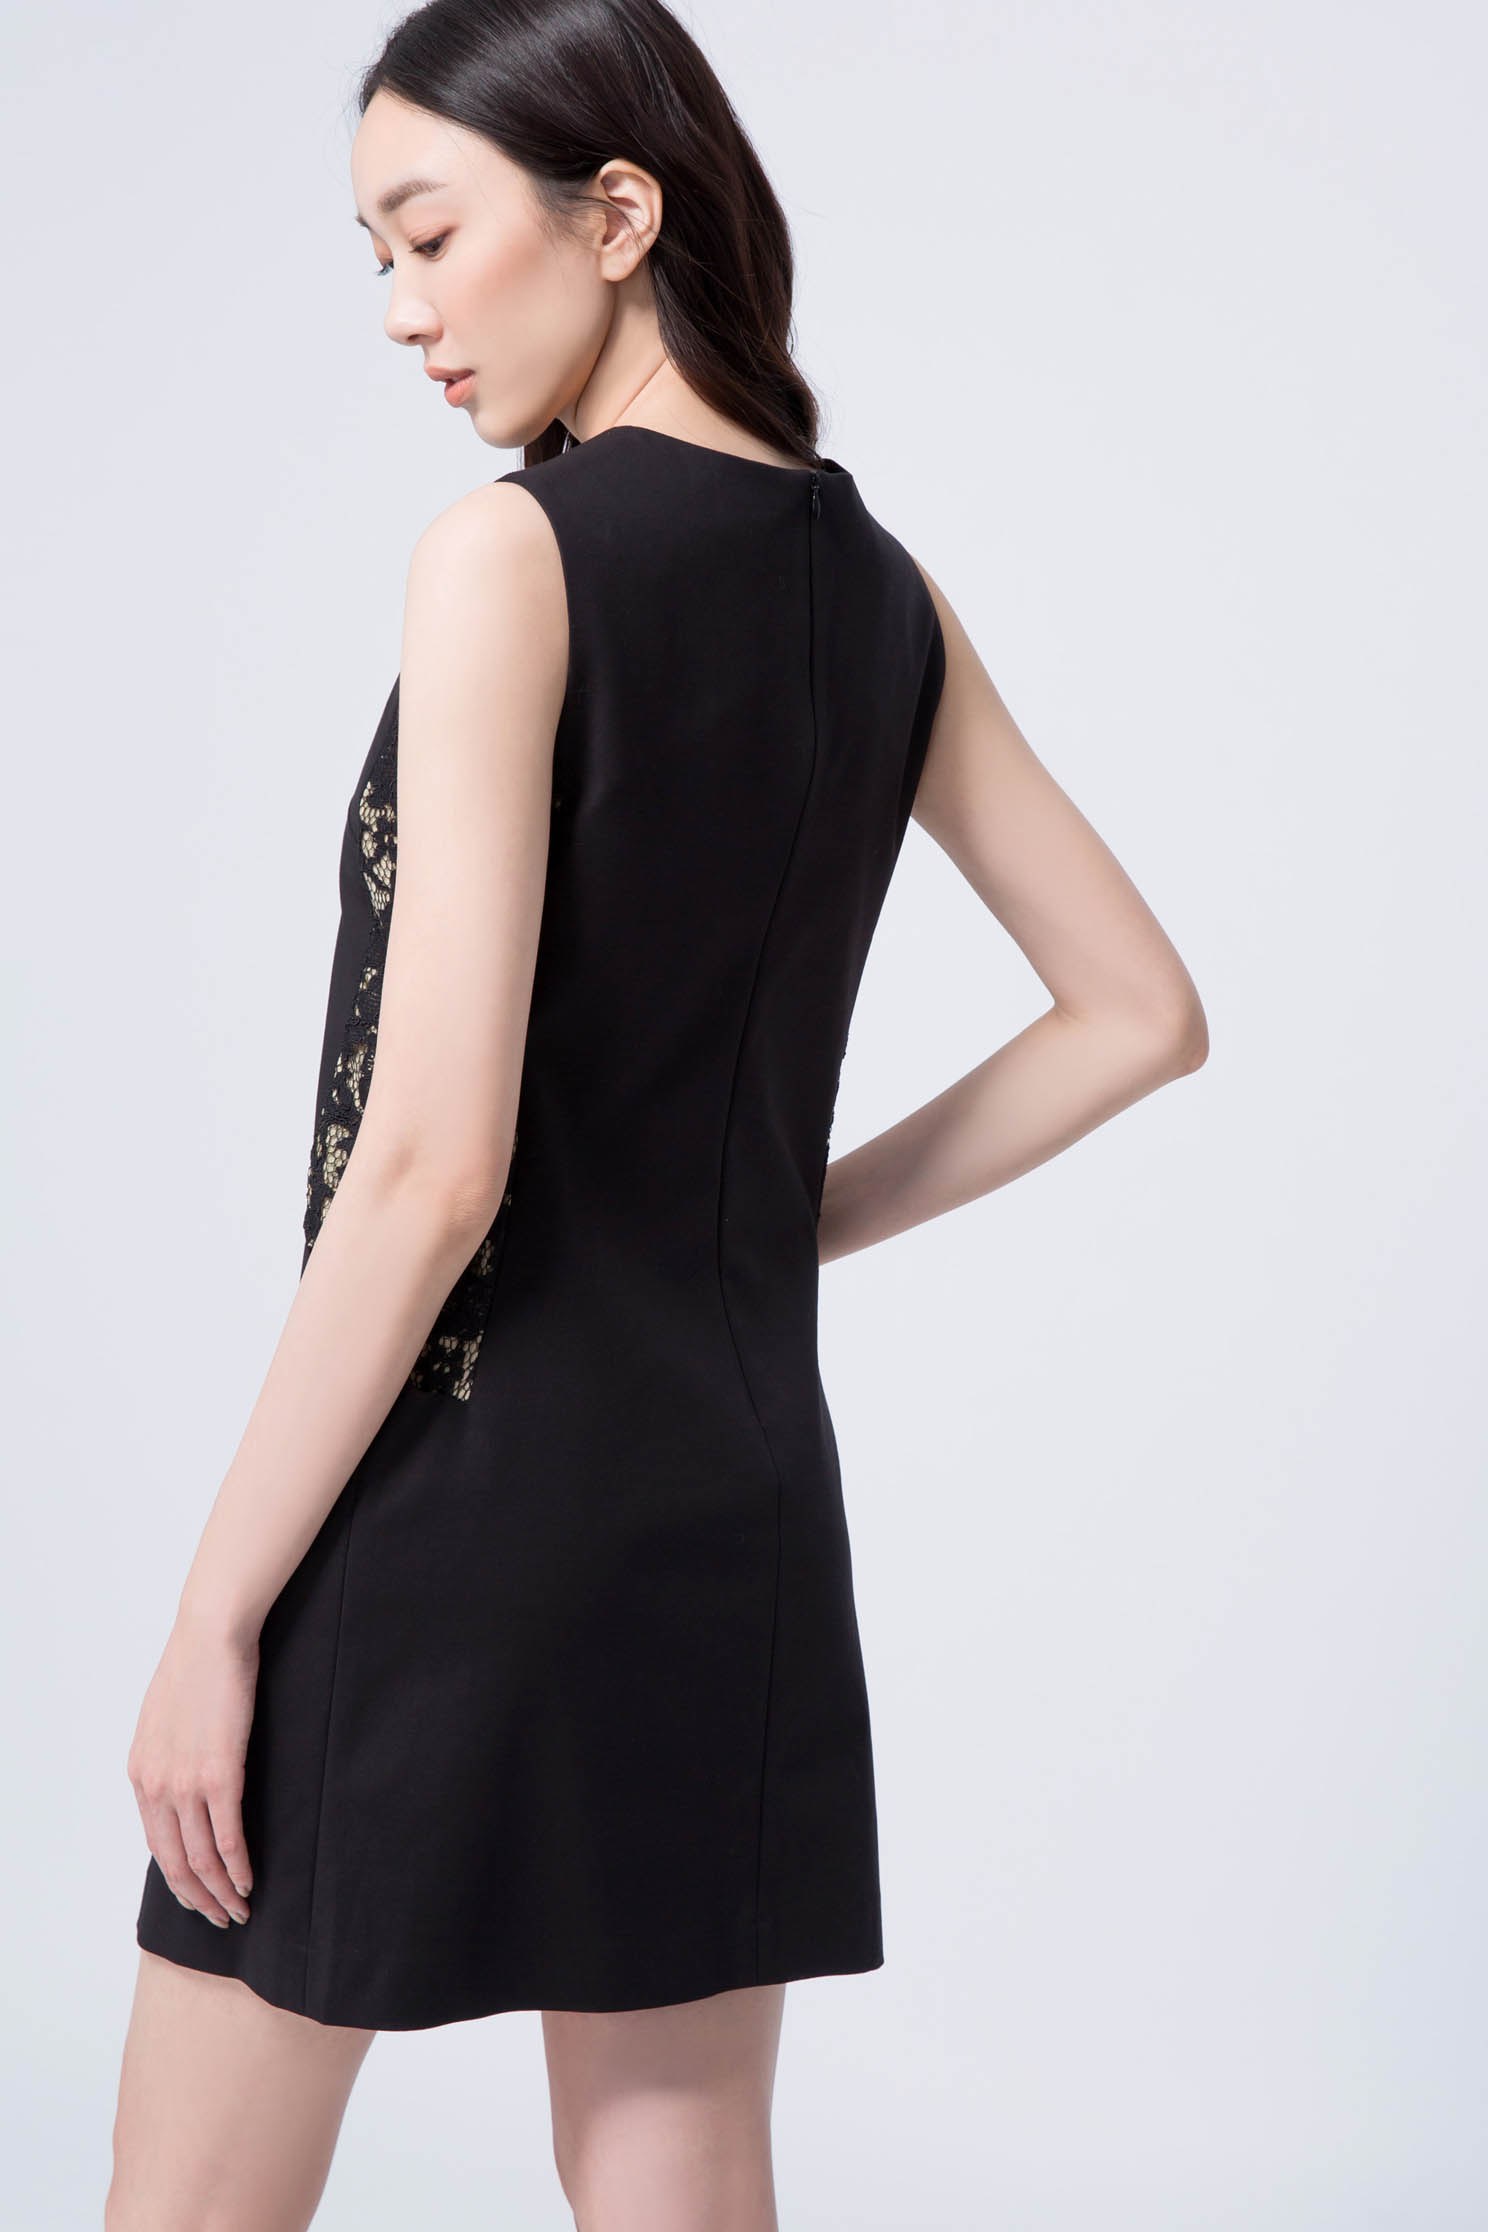 典雅腰間蕾絲拼接洋裝黑色典雅修身經典設計無袖短洋,無袖洋裝,黑色洋裝